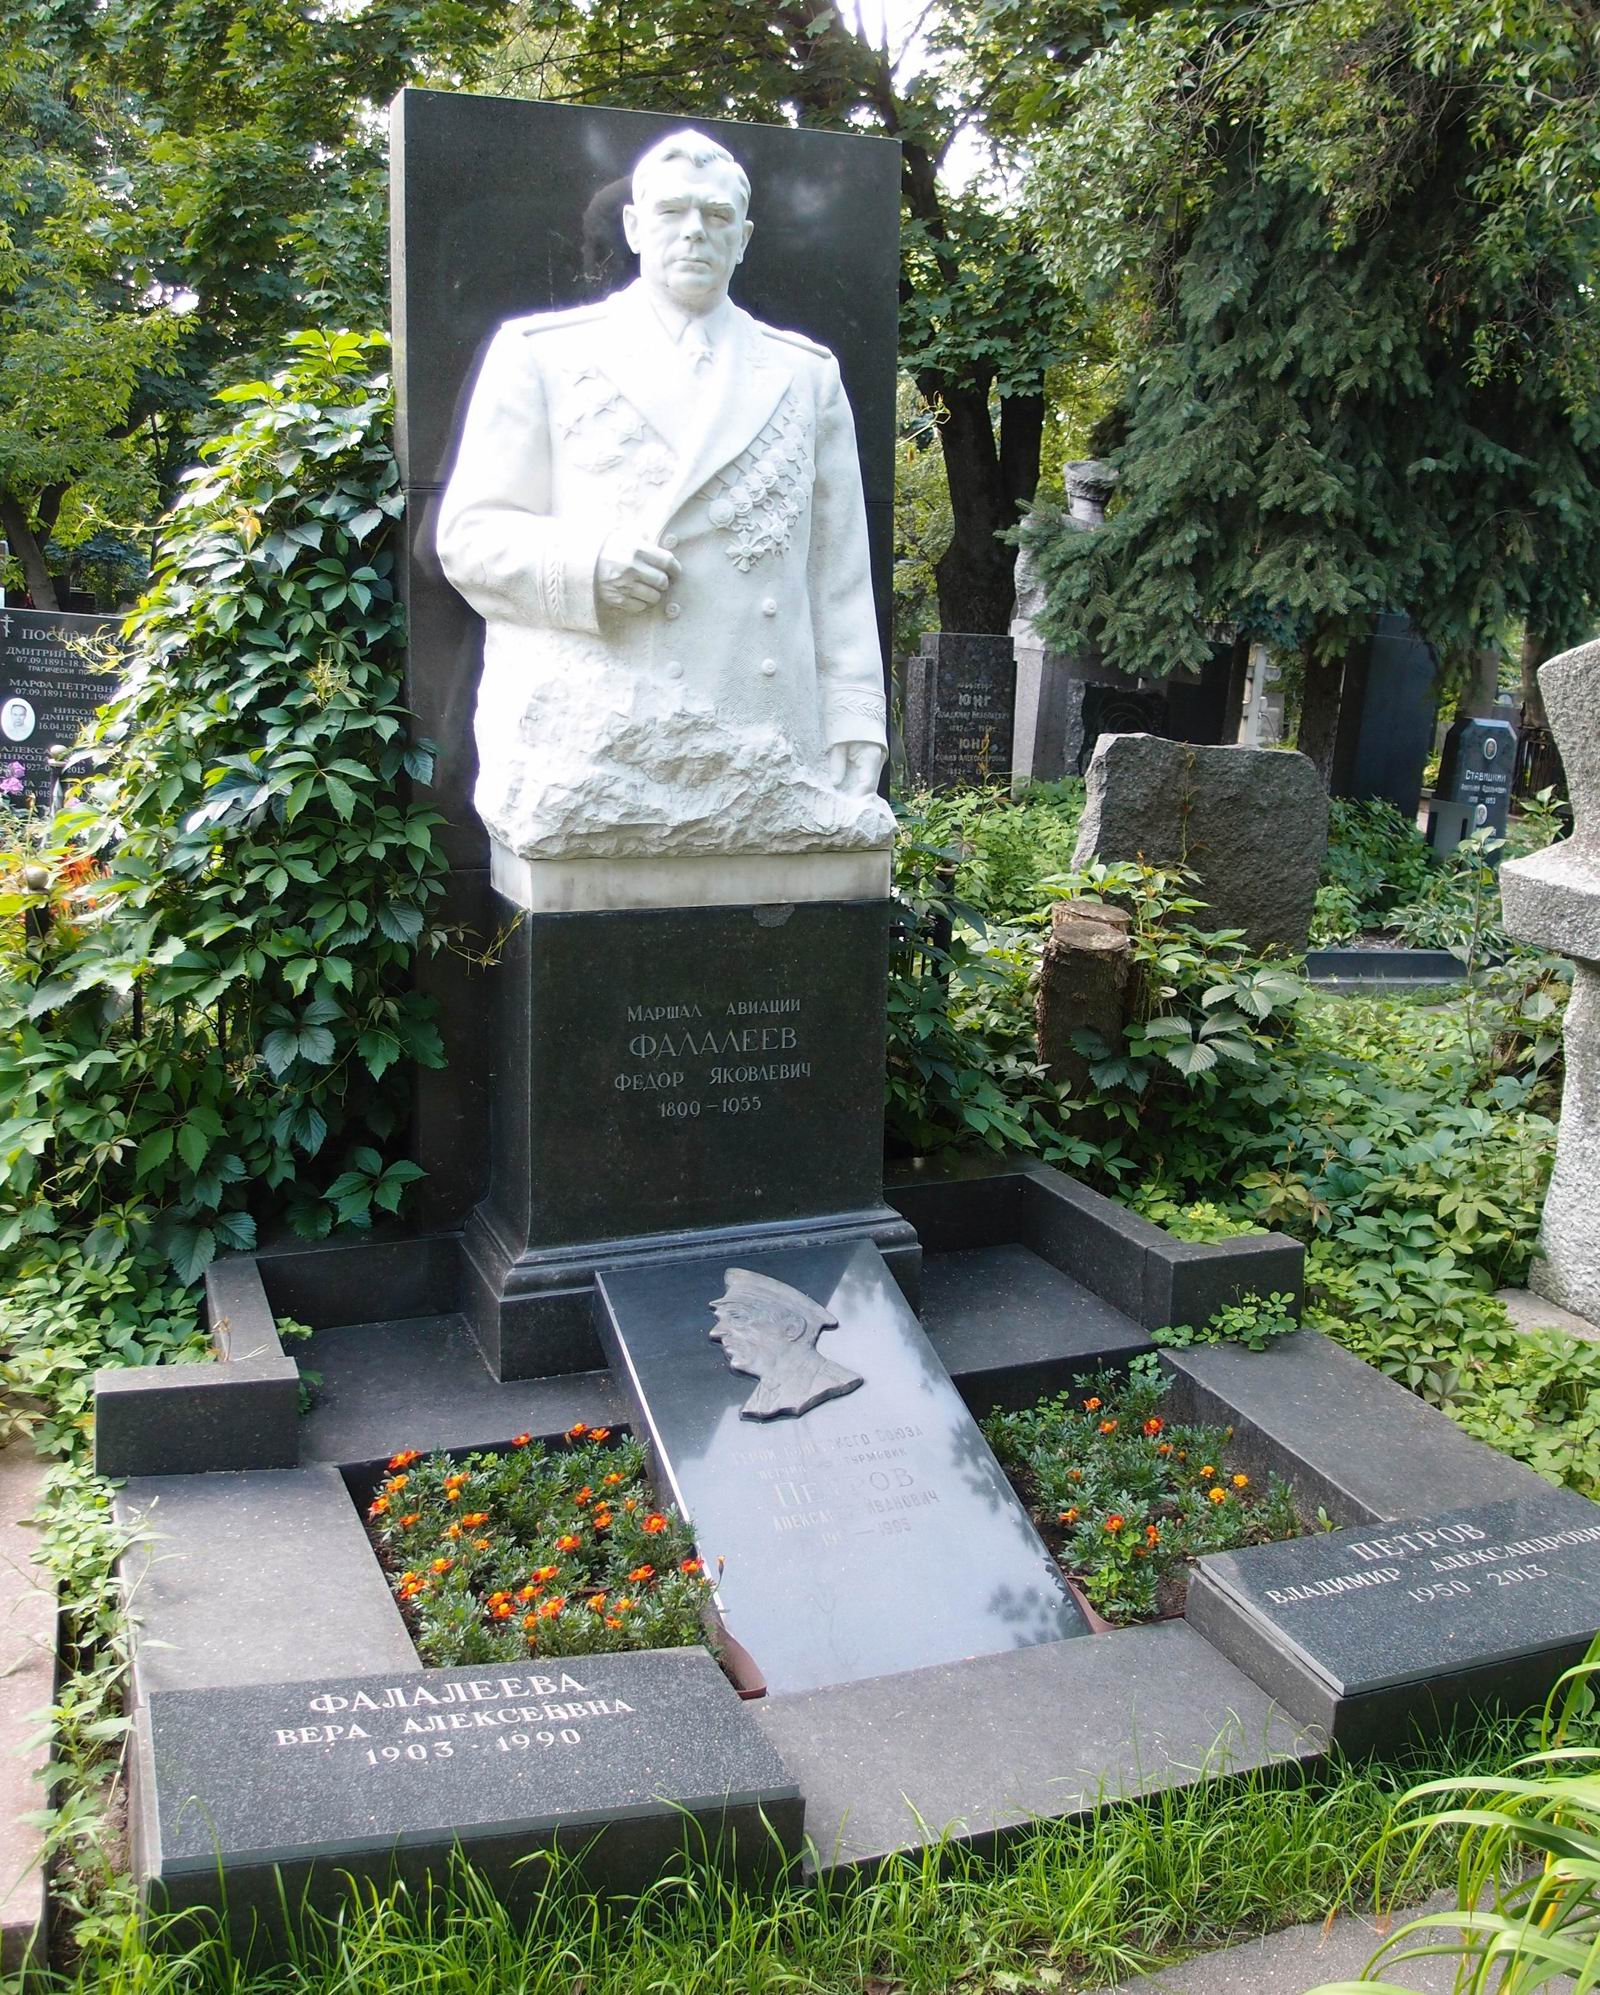 Памятник на могиле Фалалеева Ф.Я. (1899-1955), ск. А.Елецкий, на Новодевичьем кладбище (4-5-5). Нажмите левую кнопку мыши чтобы увидеть фрагмент памятника.